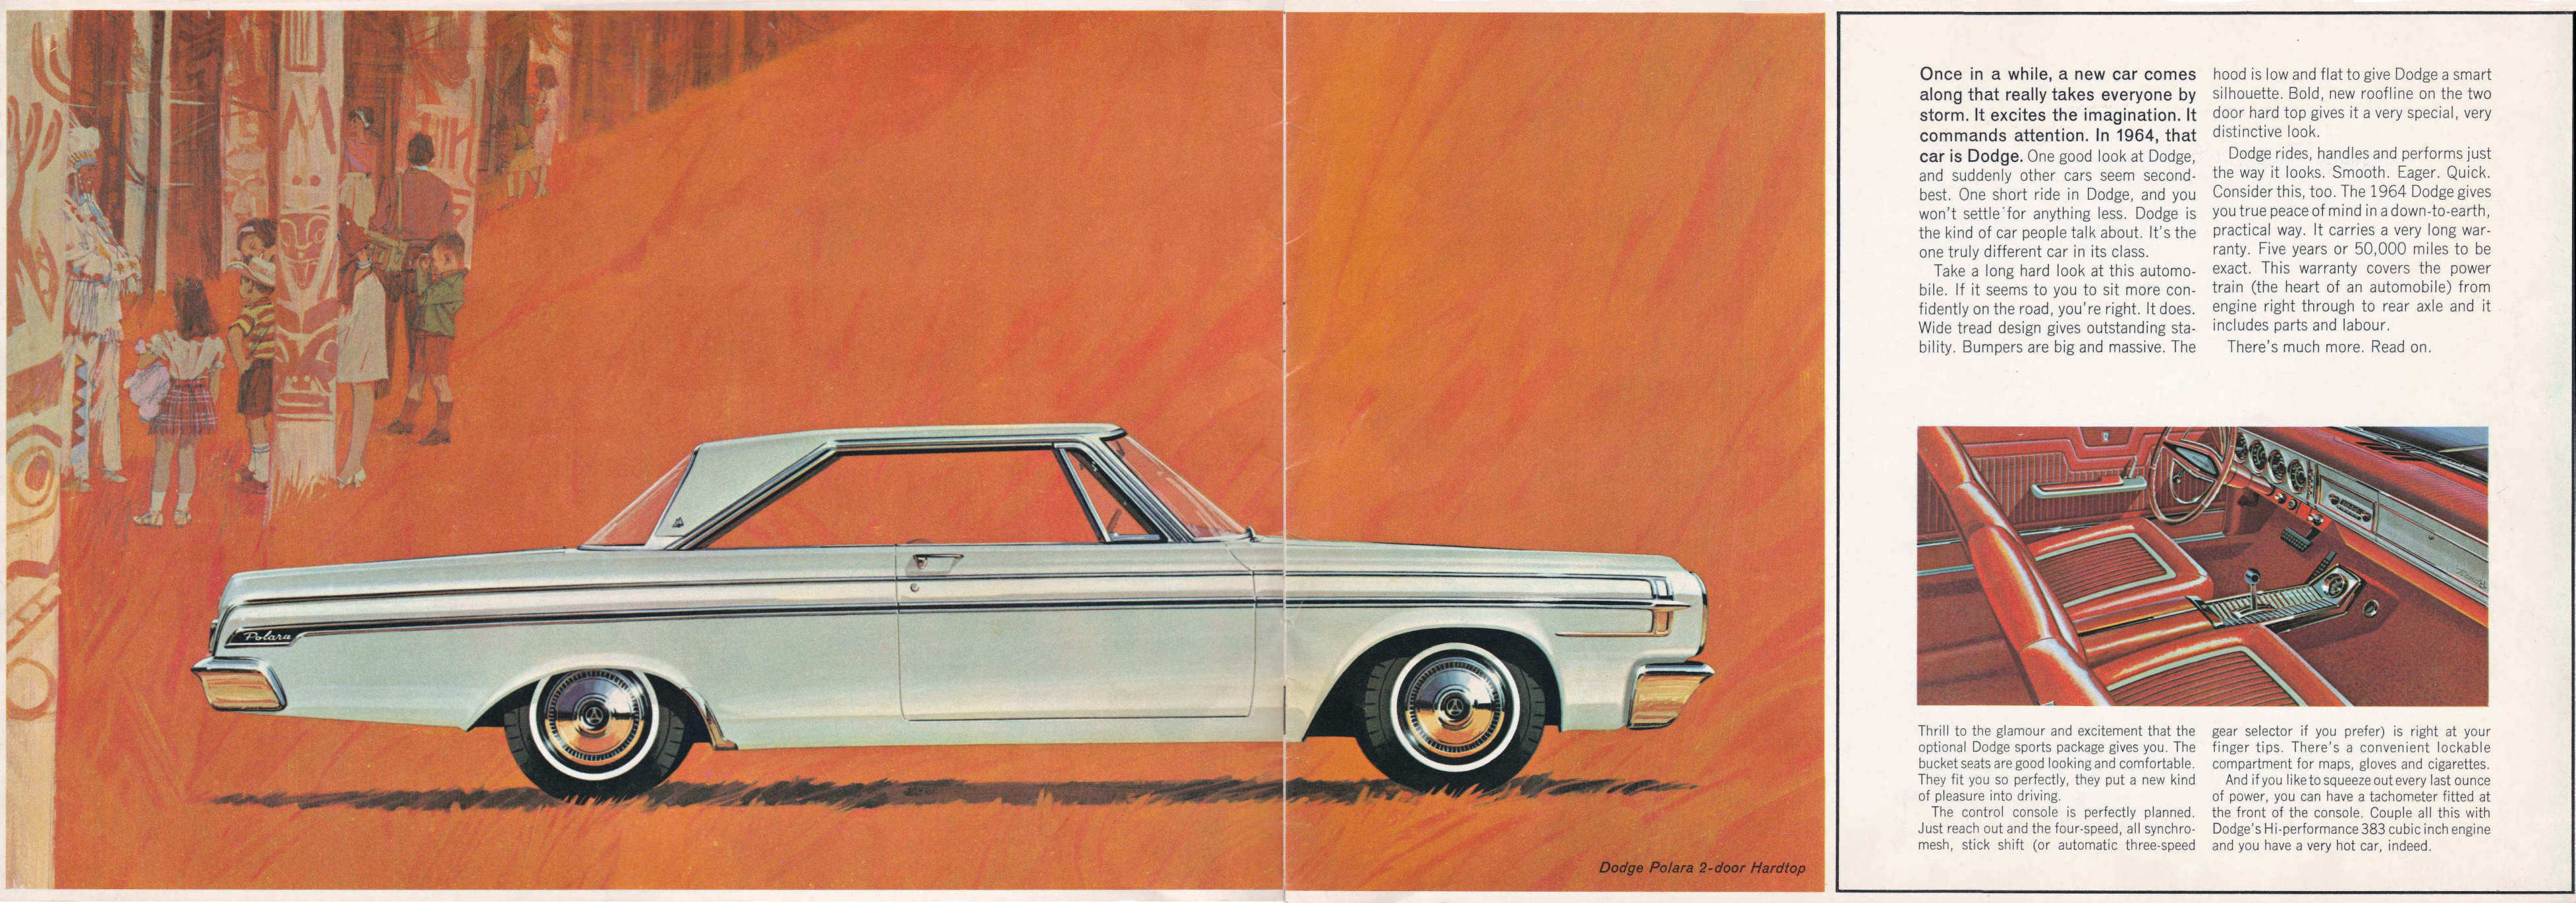 1964_Dodge_Cdn-02-03